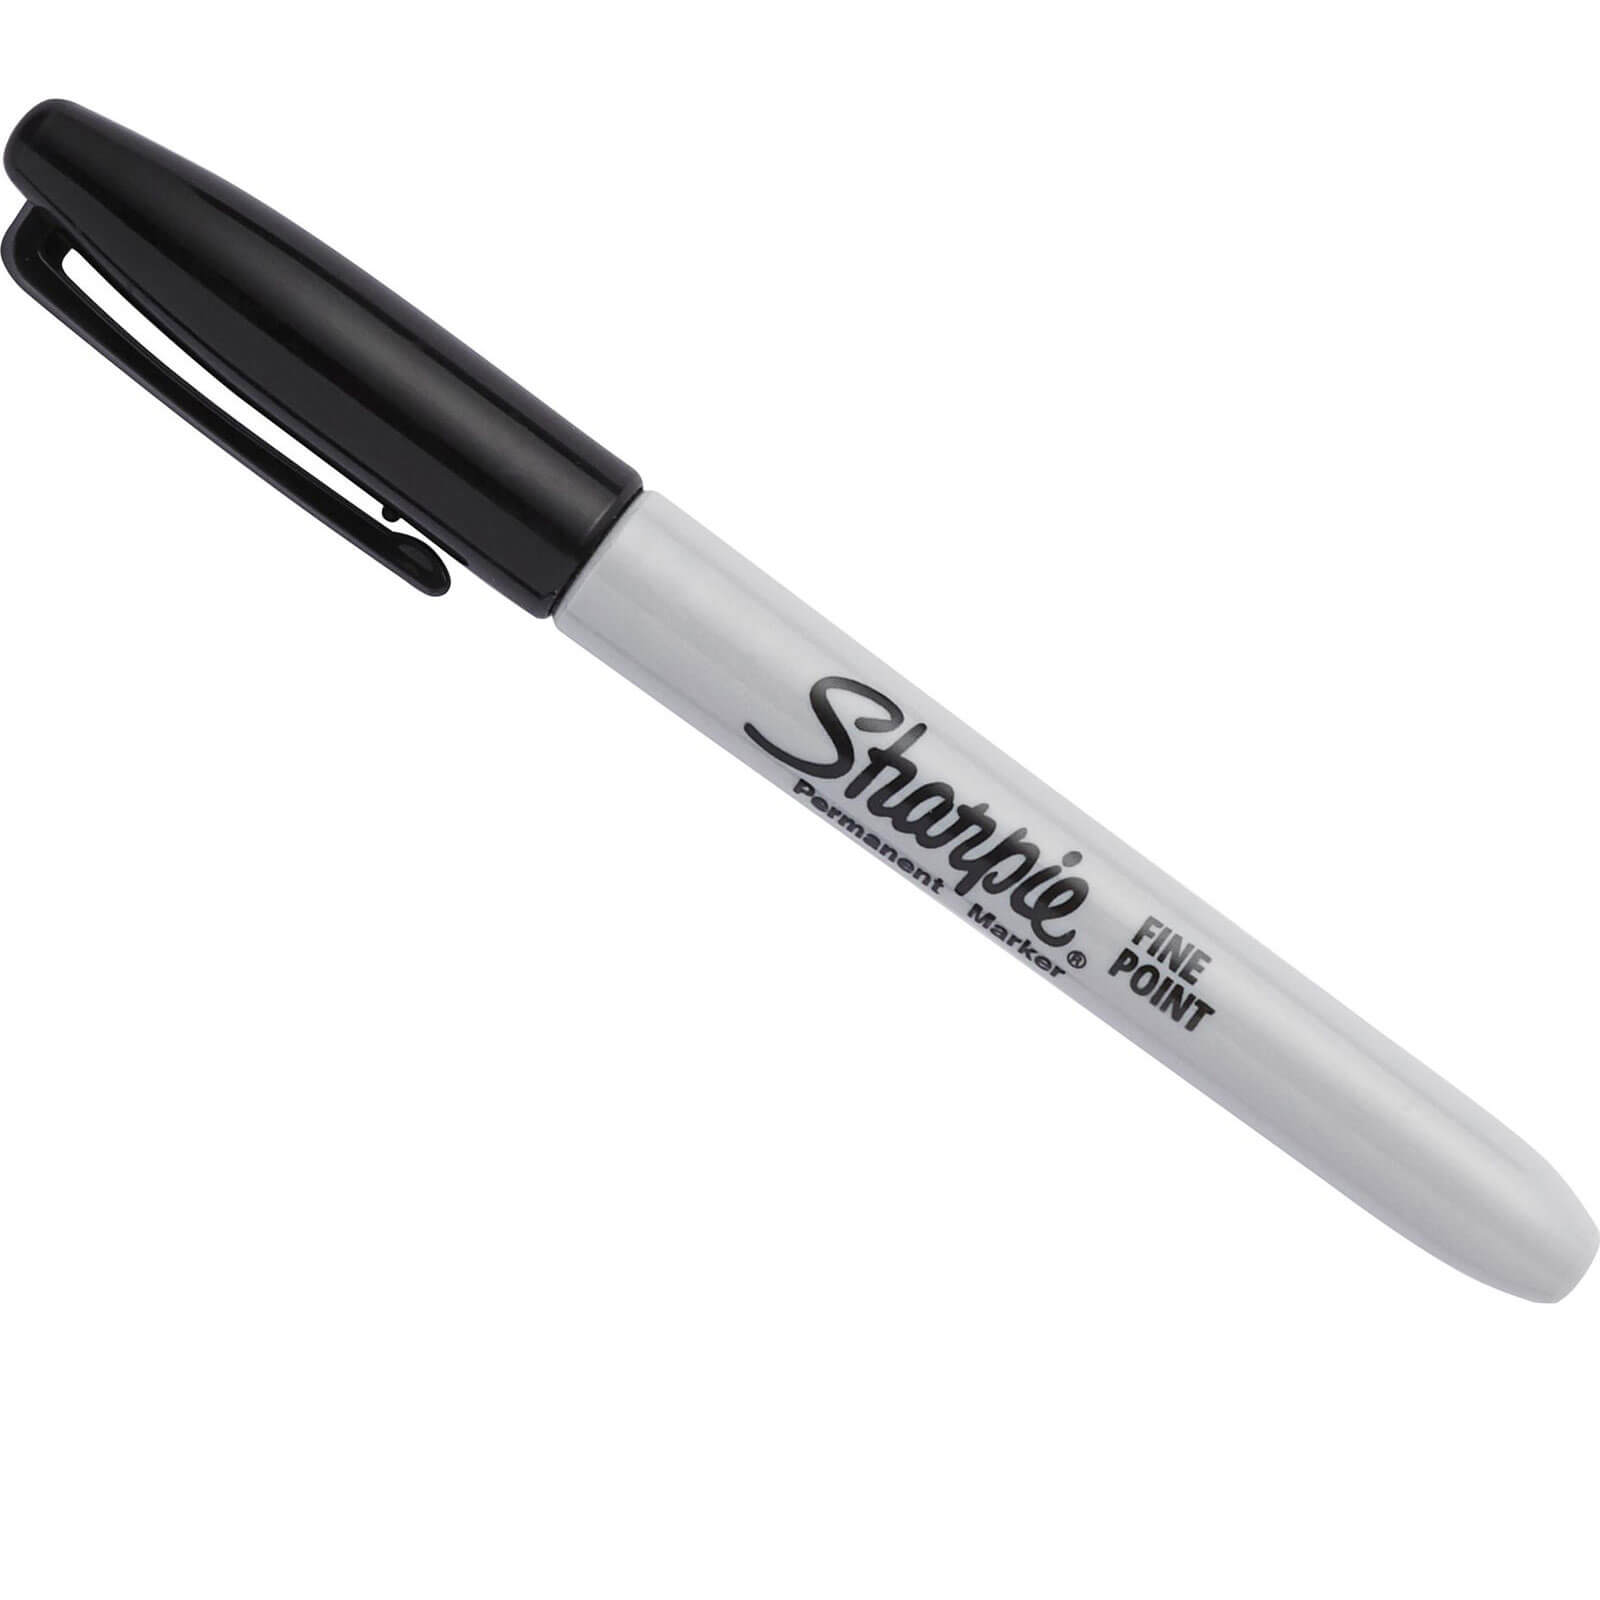 Image of Sharpie Fine Tip Permanent Marker Pen Black Pack of 1